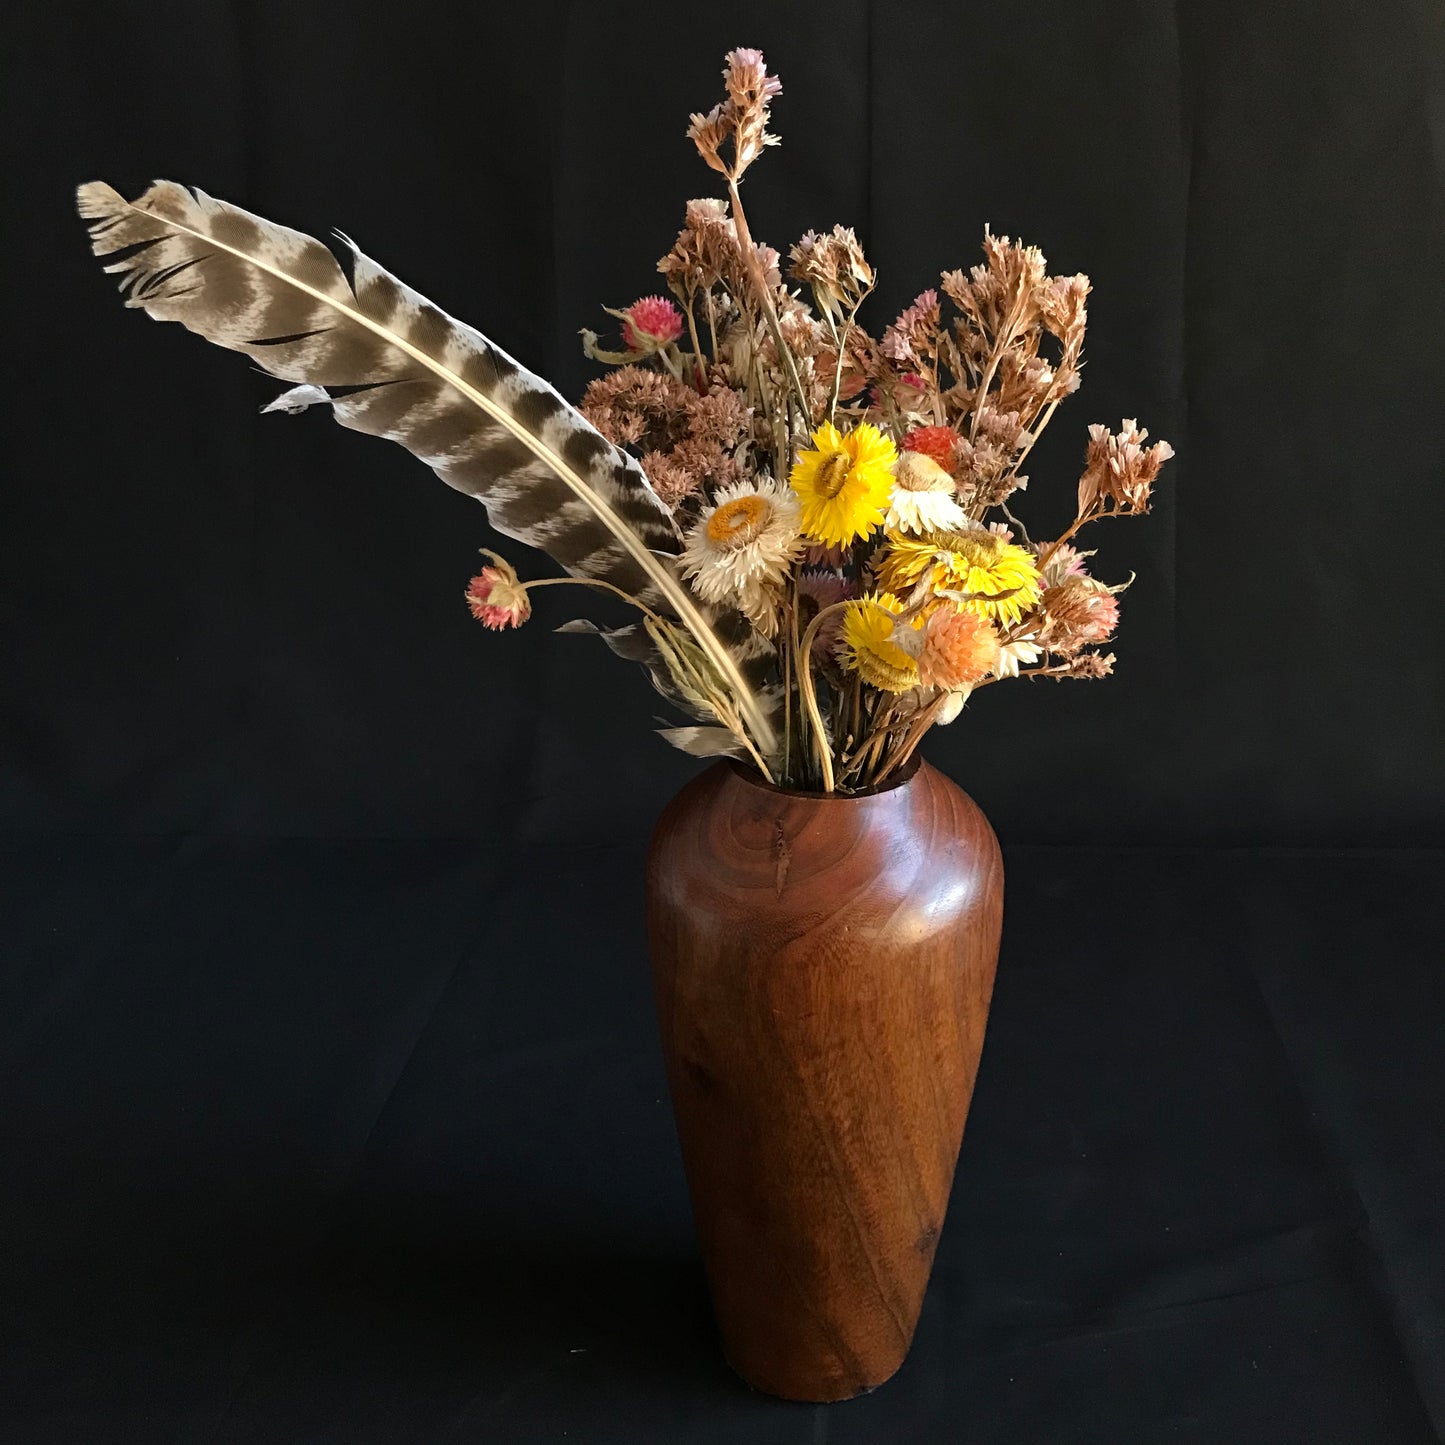 Polished Teak Wood Vase